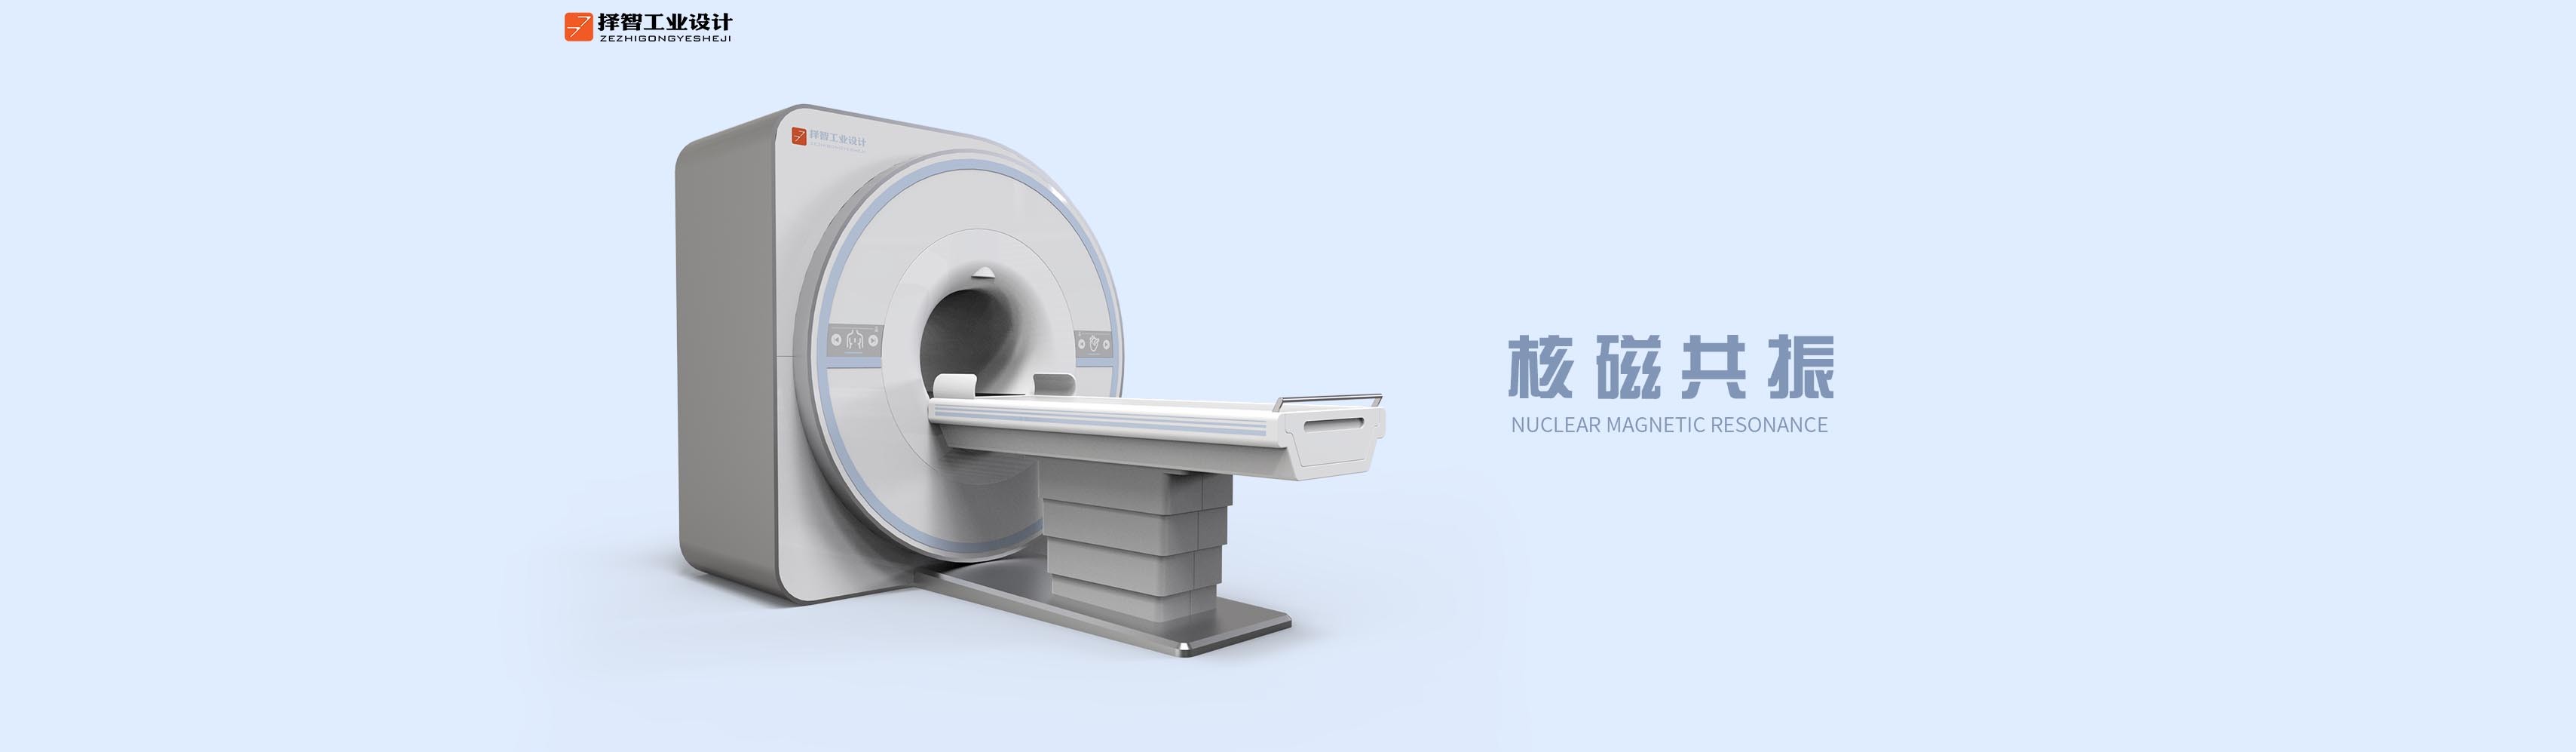 上海苏州产品设计工业产品外观设计结构设计核磁共振